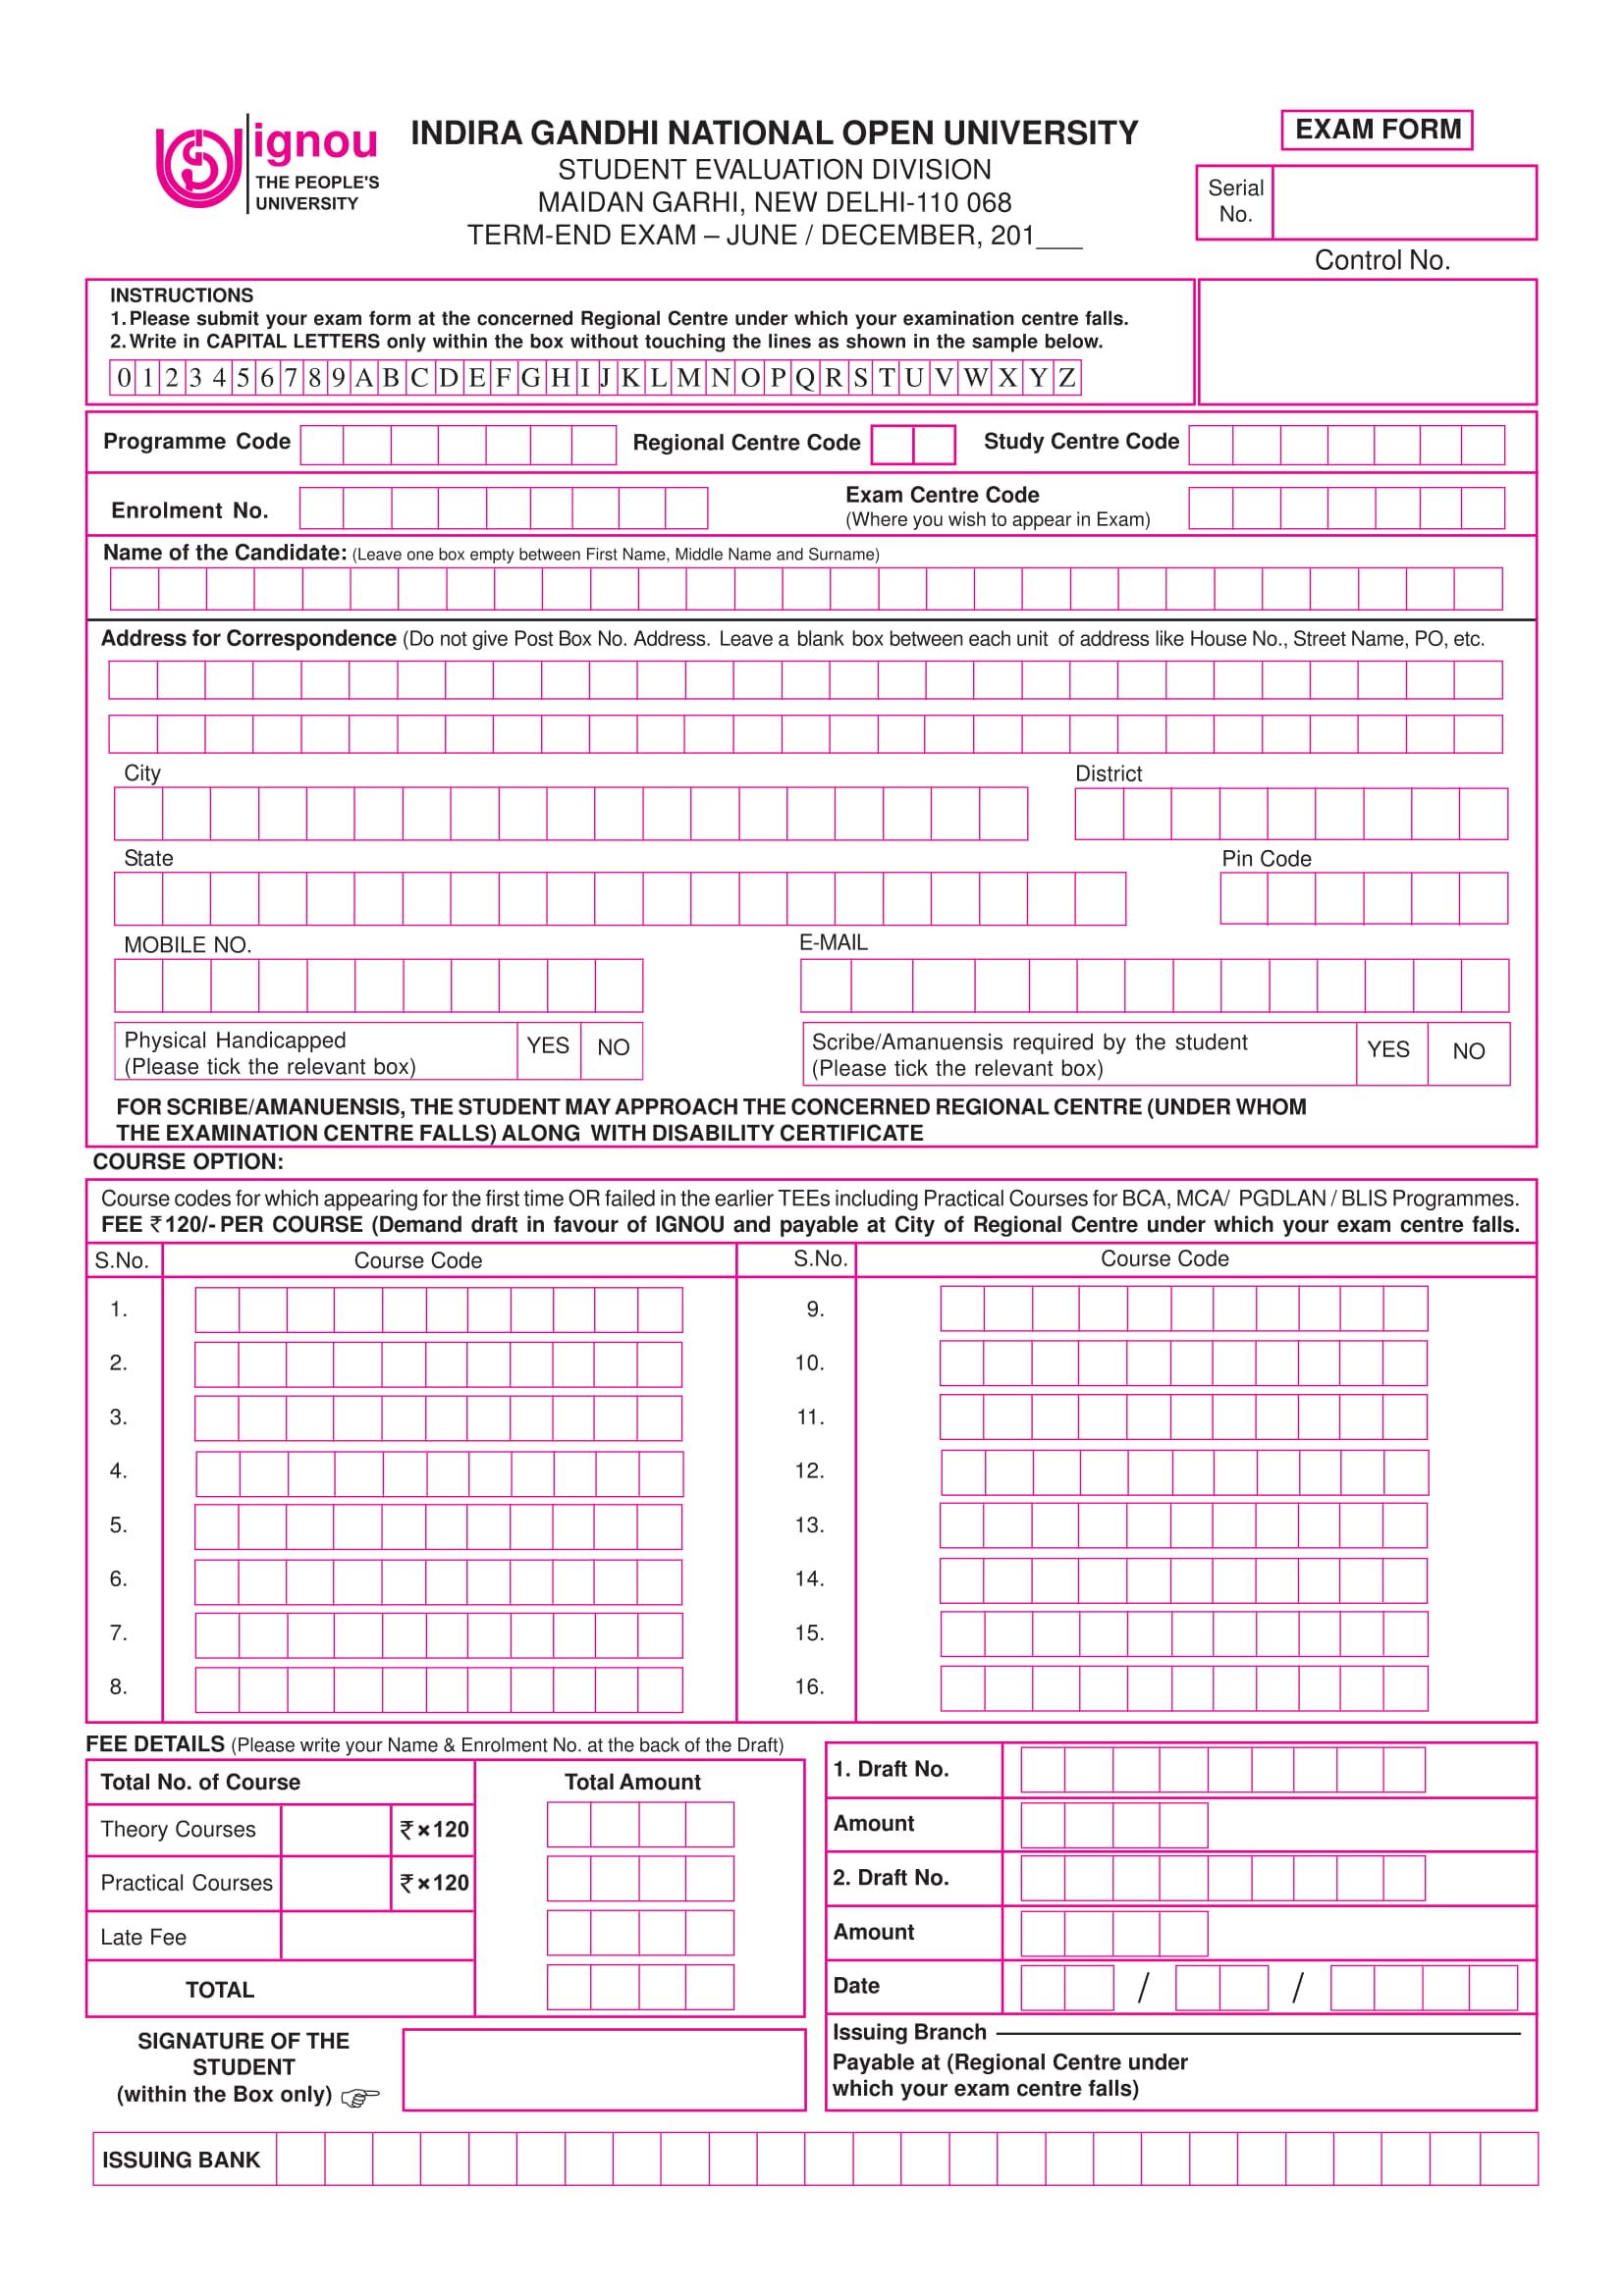 IGNOU Exam Form PDF